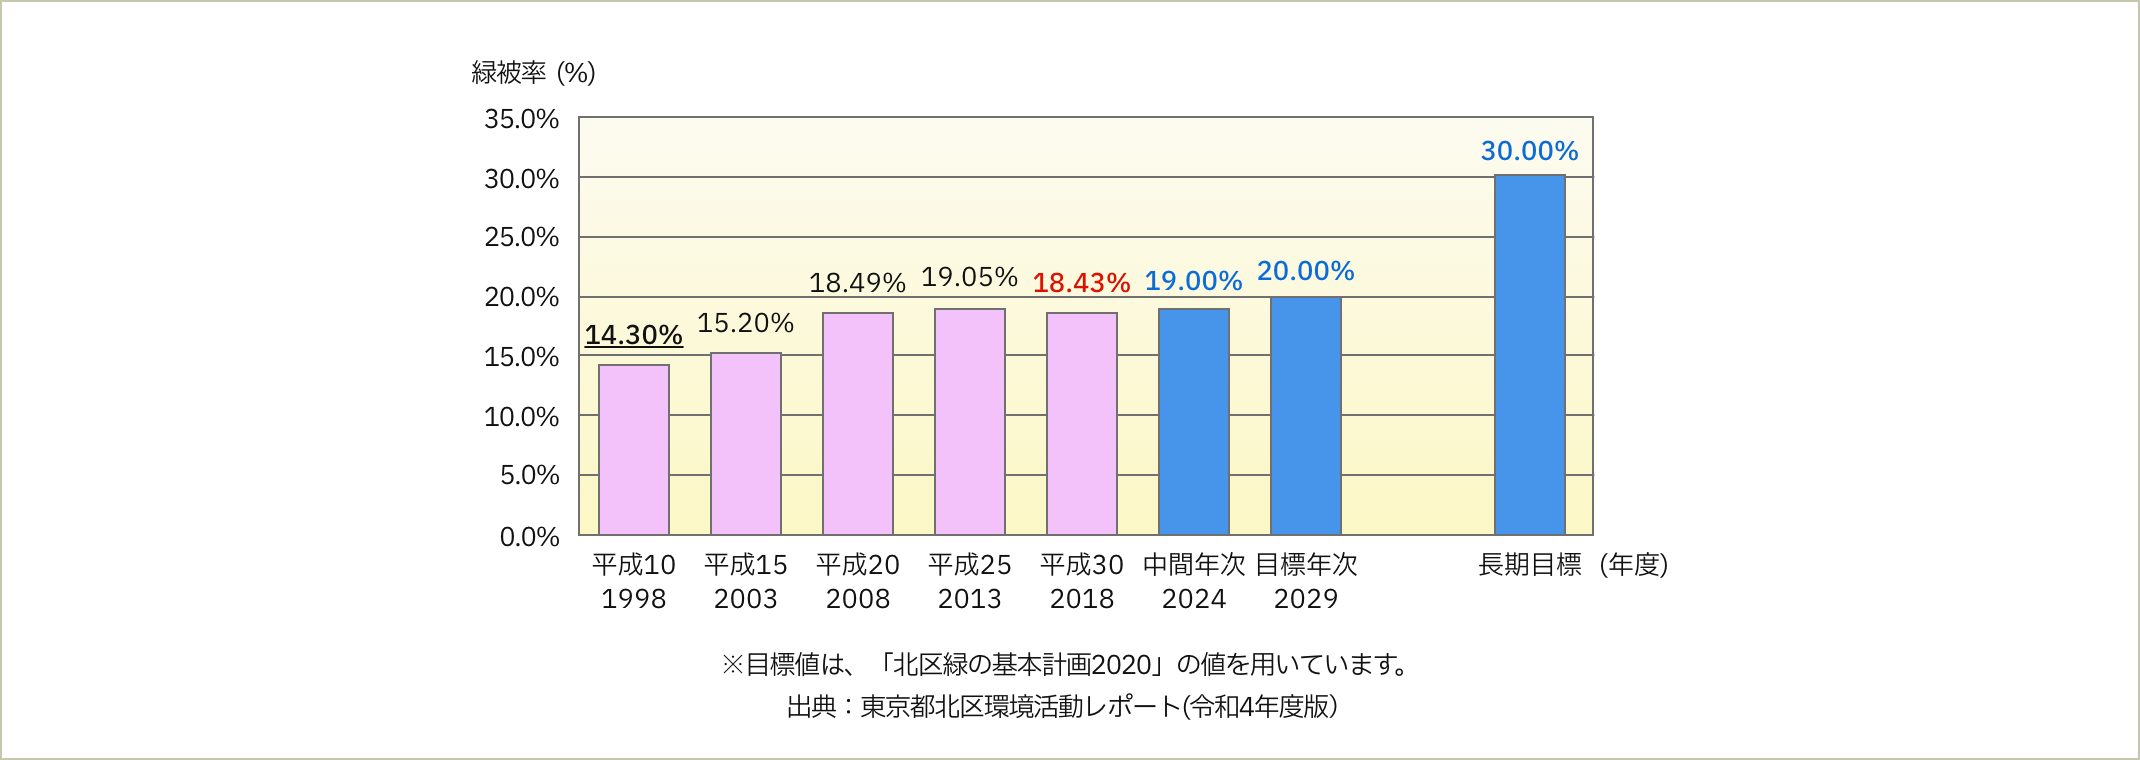 1998年度:14.30% 2003年度:15.20% 2008年度:18.49% 2013年度:19.05% 2018年度:18.43% 2024年度:19.00% 2029年度:20.00%　長期目標（年度）:30.00% ※目標値は、「北区みどりの基本計画2020」の値を用いています。 出典：東京都北区環境活動レポート（令和4年度版）